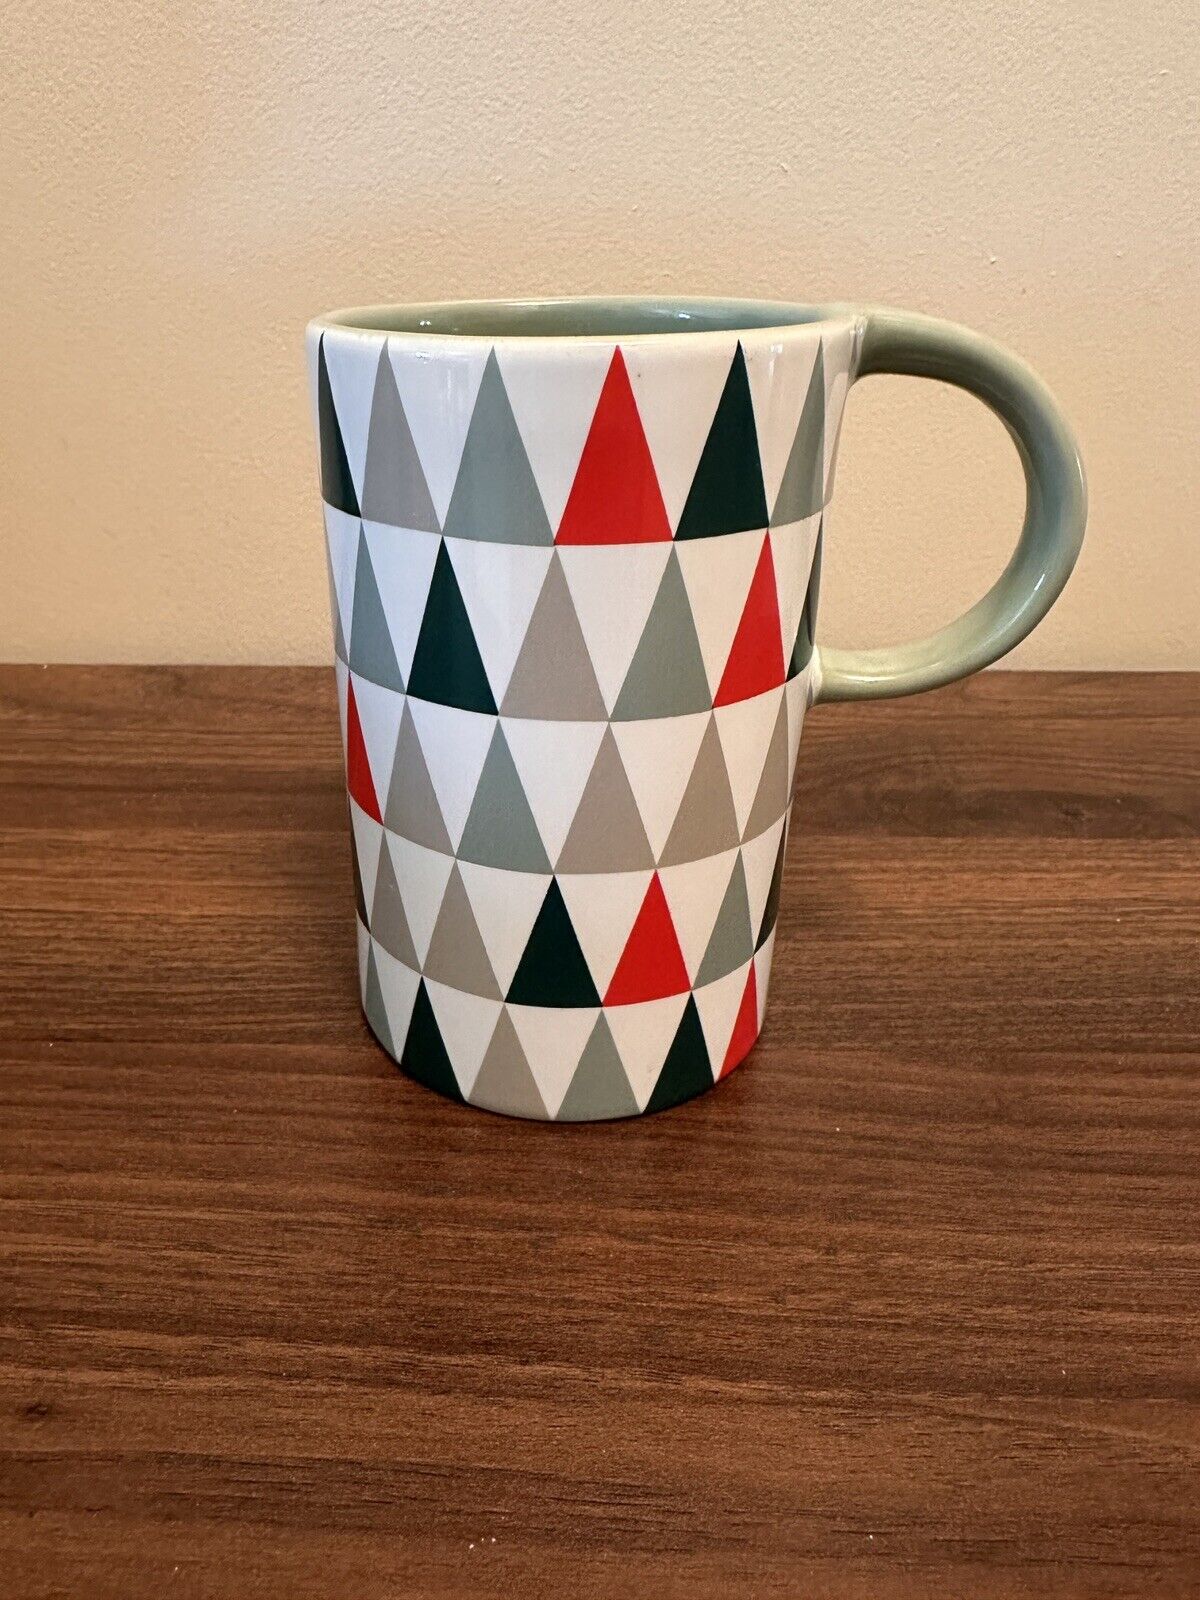 Starbucks Christmas Tree Holidays Ceramic Coffee Mug 2017 Tall